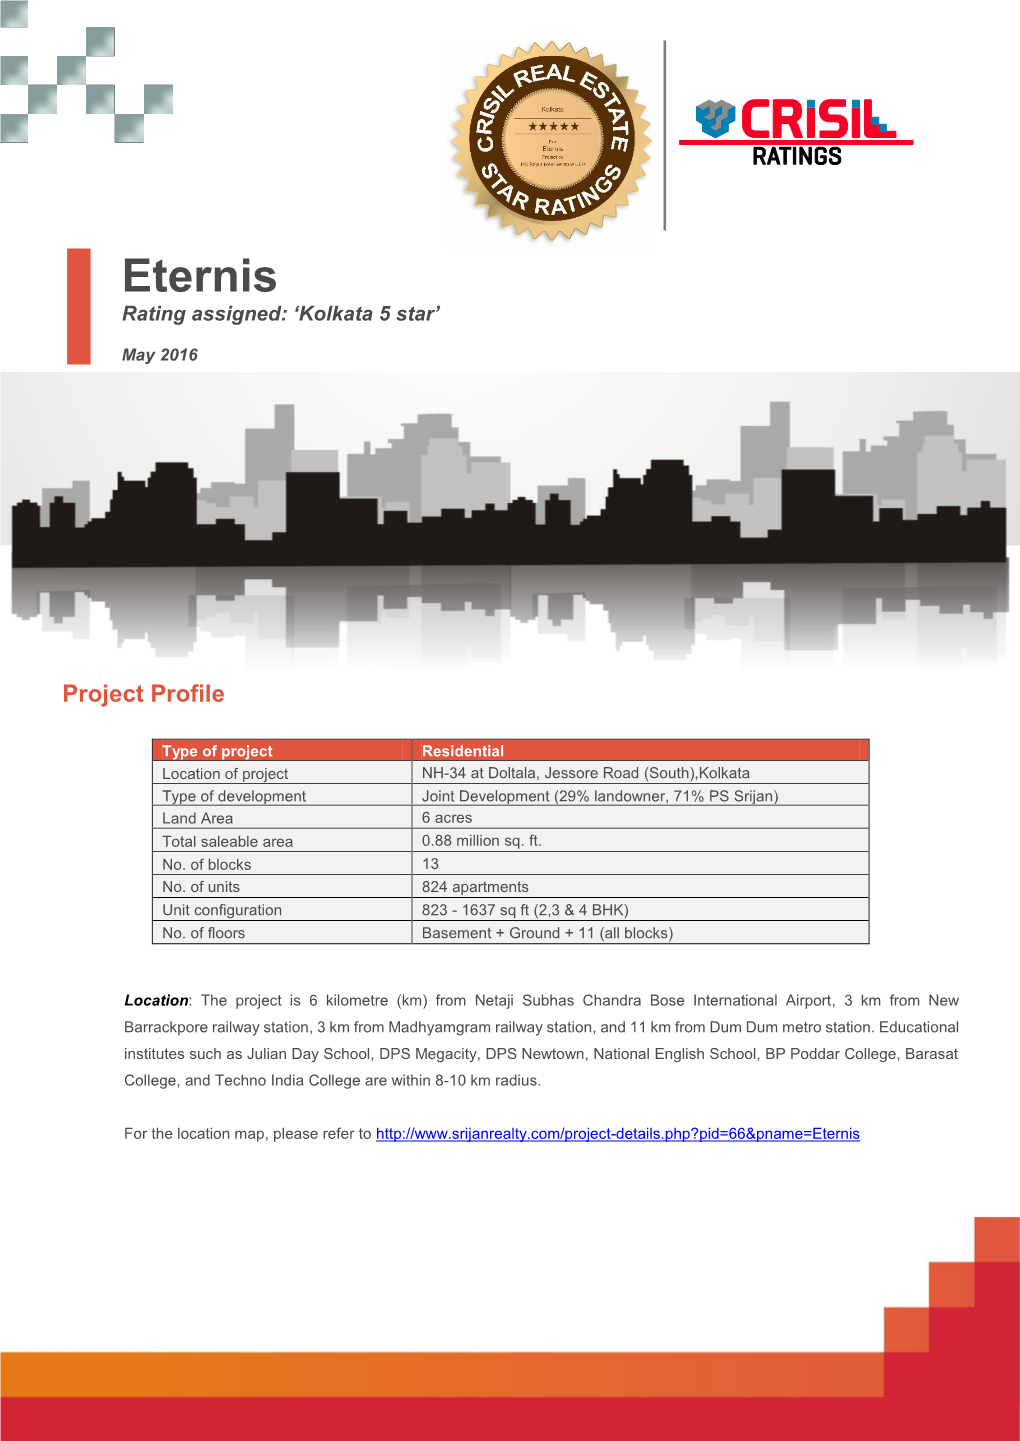 Eternis Rating Assigned: ‘Kolkata 5 Star’